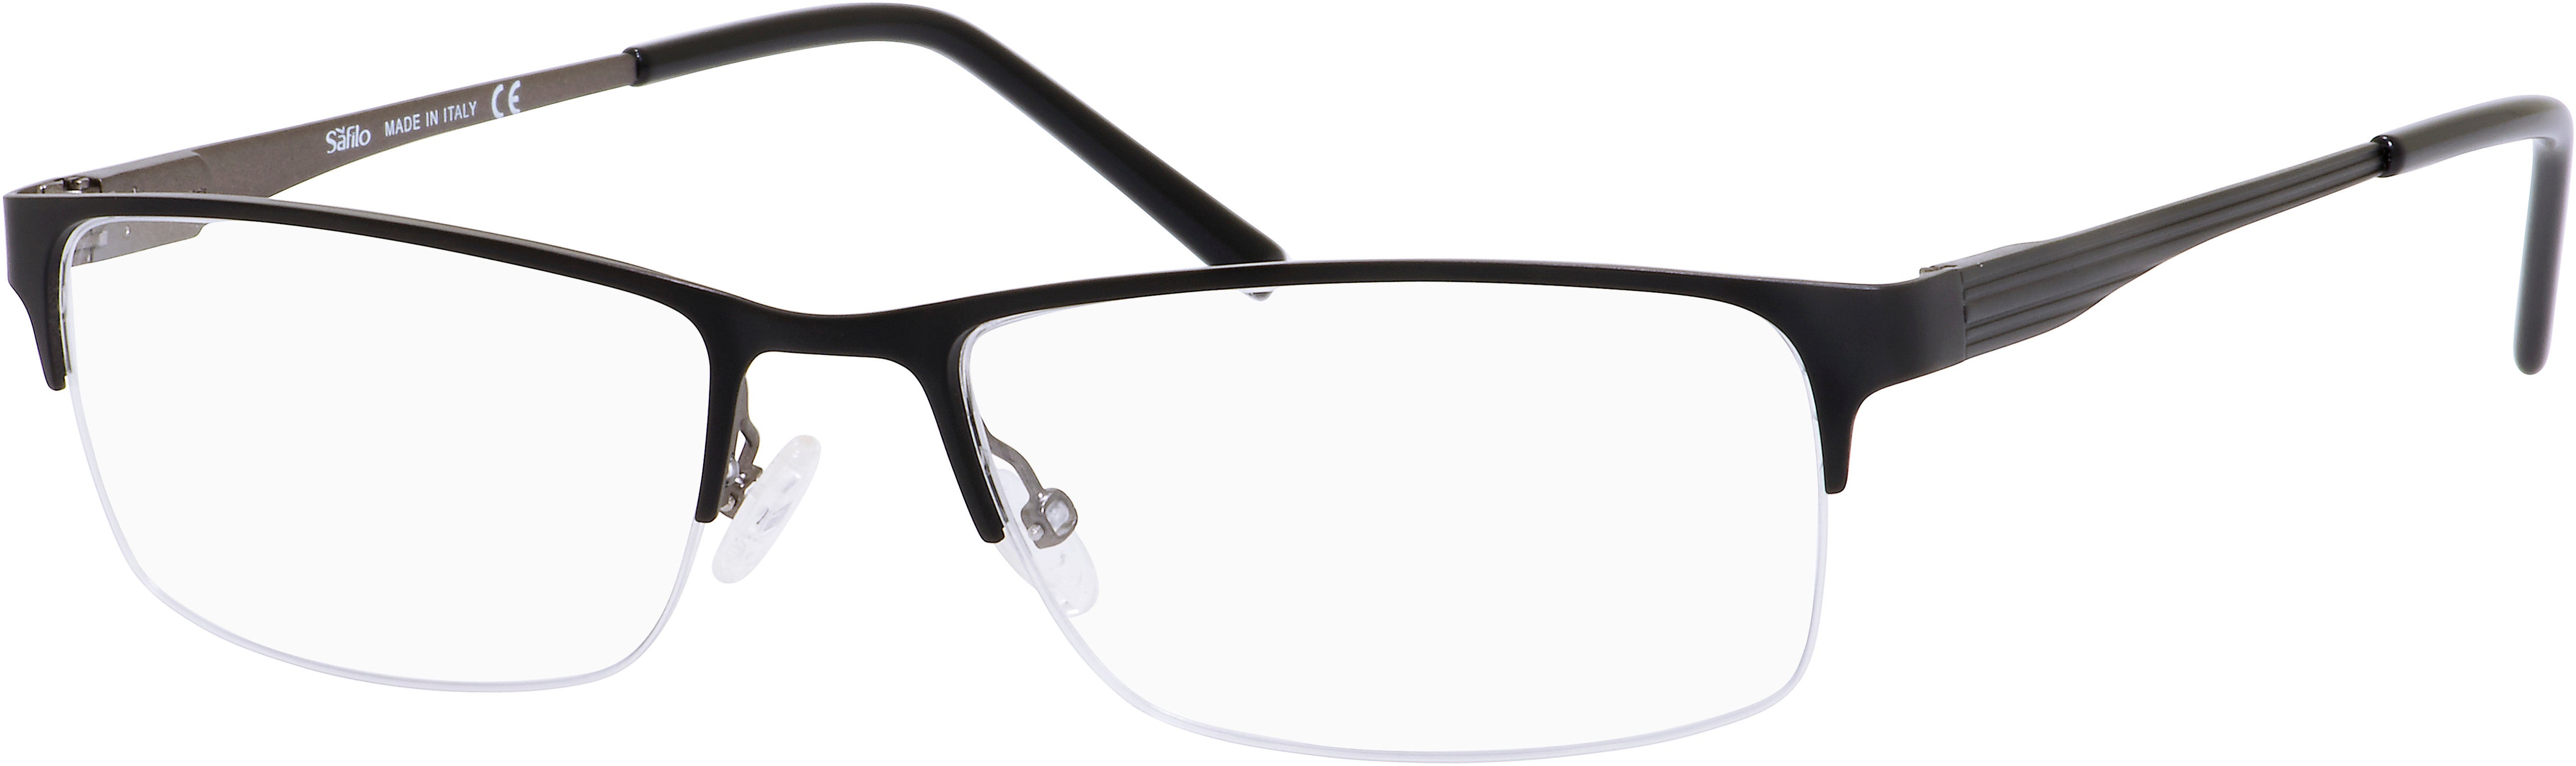  Elasta 3099 Rectangular Eyeglasses 0JVW-0JVW  Black (00 Demo Lens)